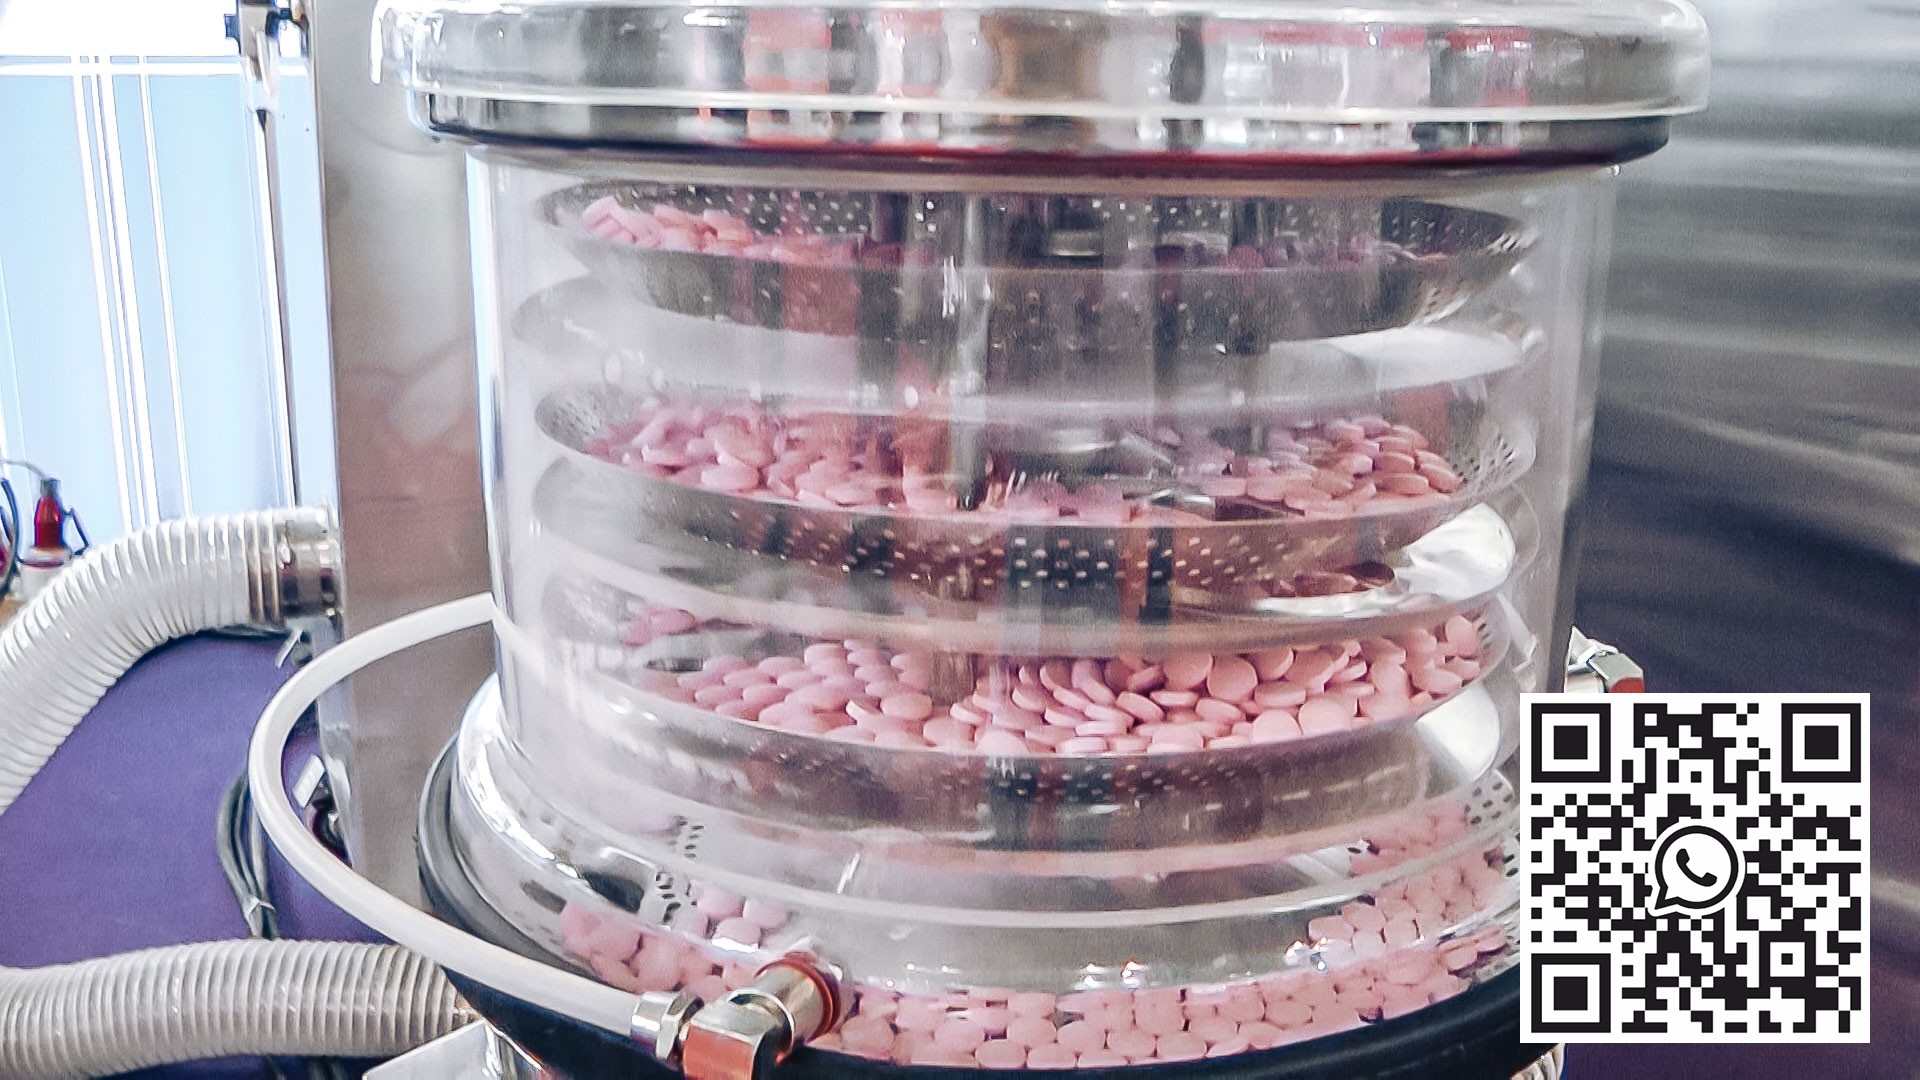 معدات آلية لإزالة الغبار وتلميع الأقراص في صناعة الأدوية بالولايات المتحدة الأمريكية